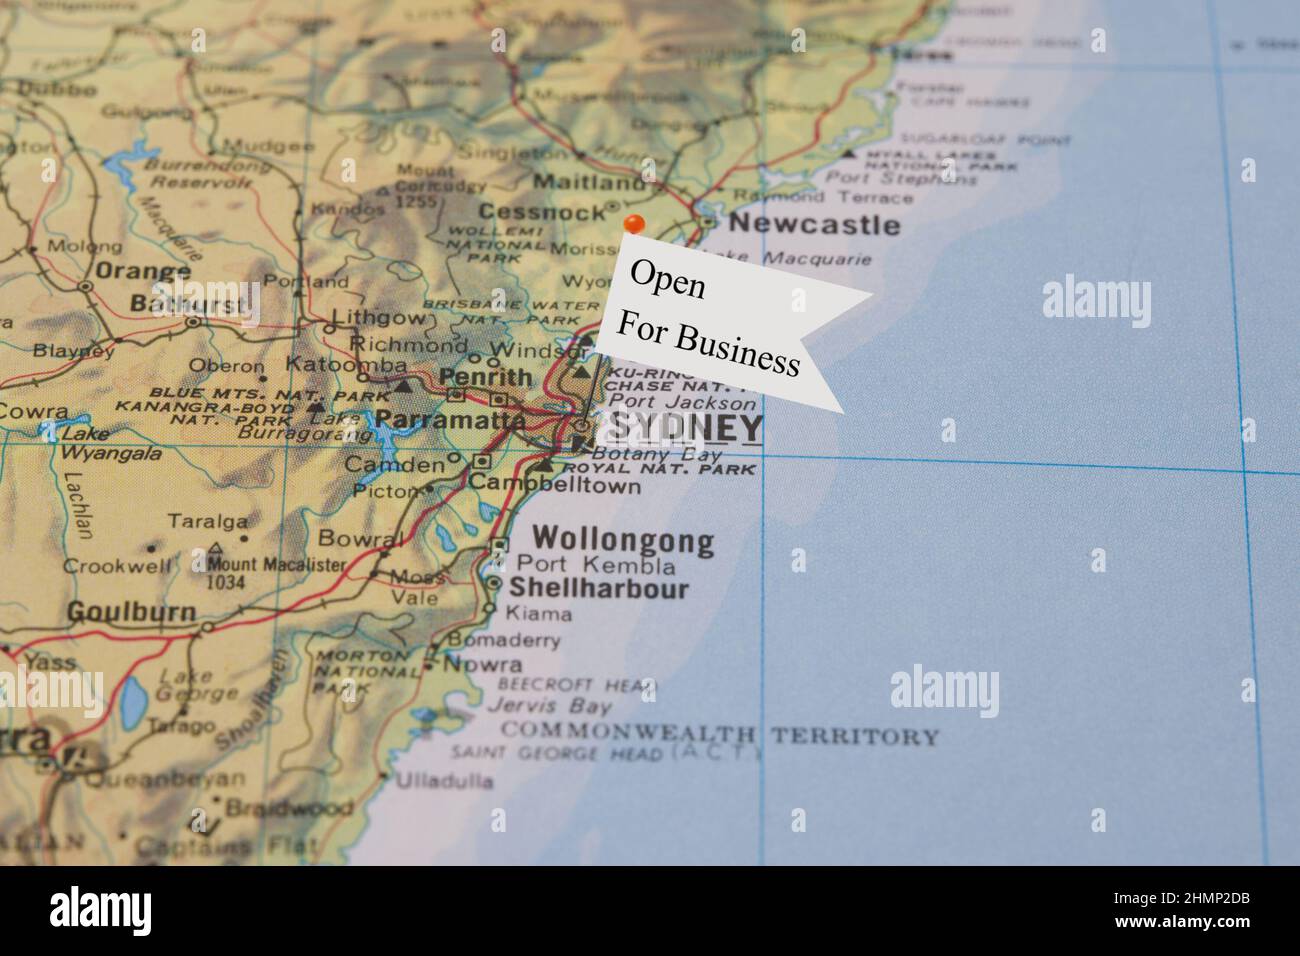 Eine Nahaufnahme einer kleinen Flagge mit dem Satz „Open for Business“ an einer Nadel, die in Sydney, Australien, in einem Atlas platziert wurde Stockfoto